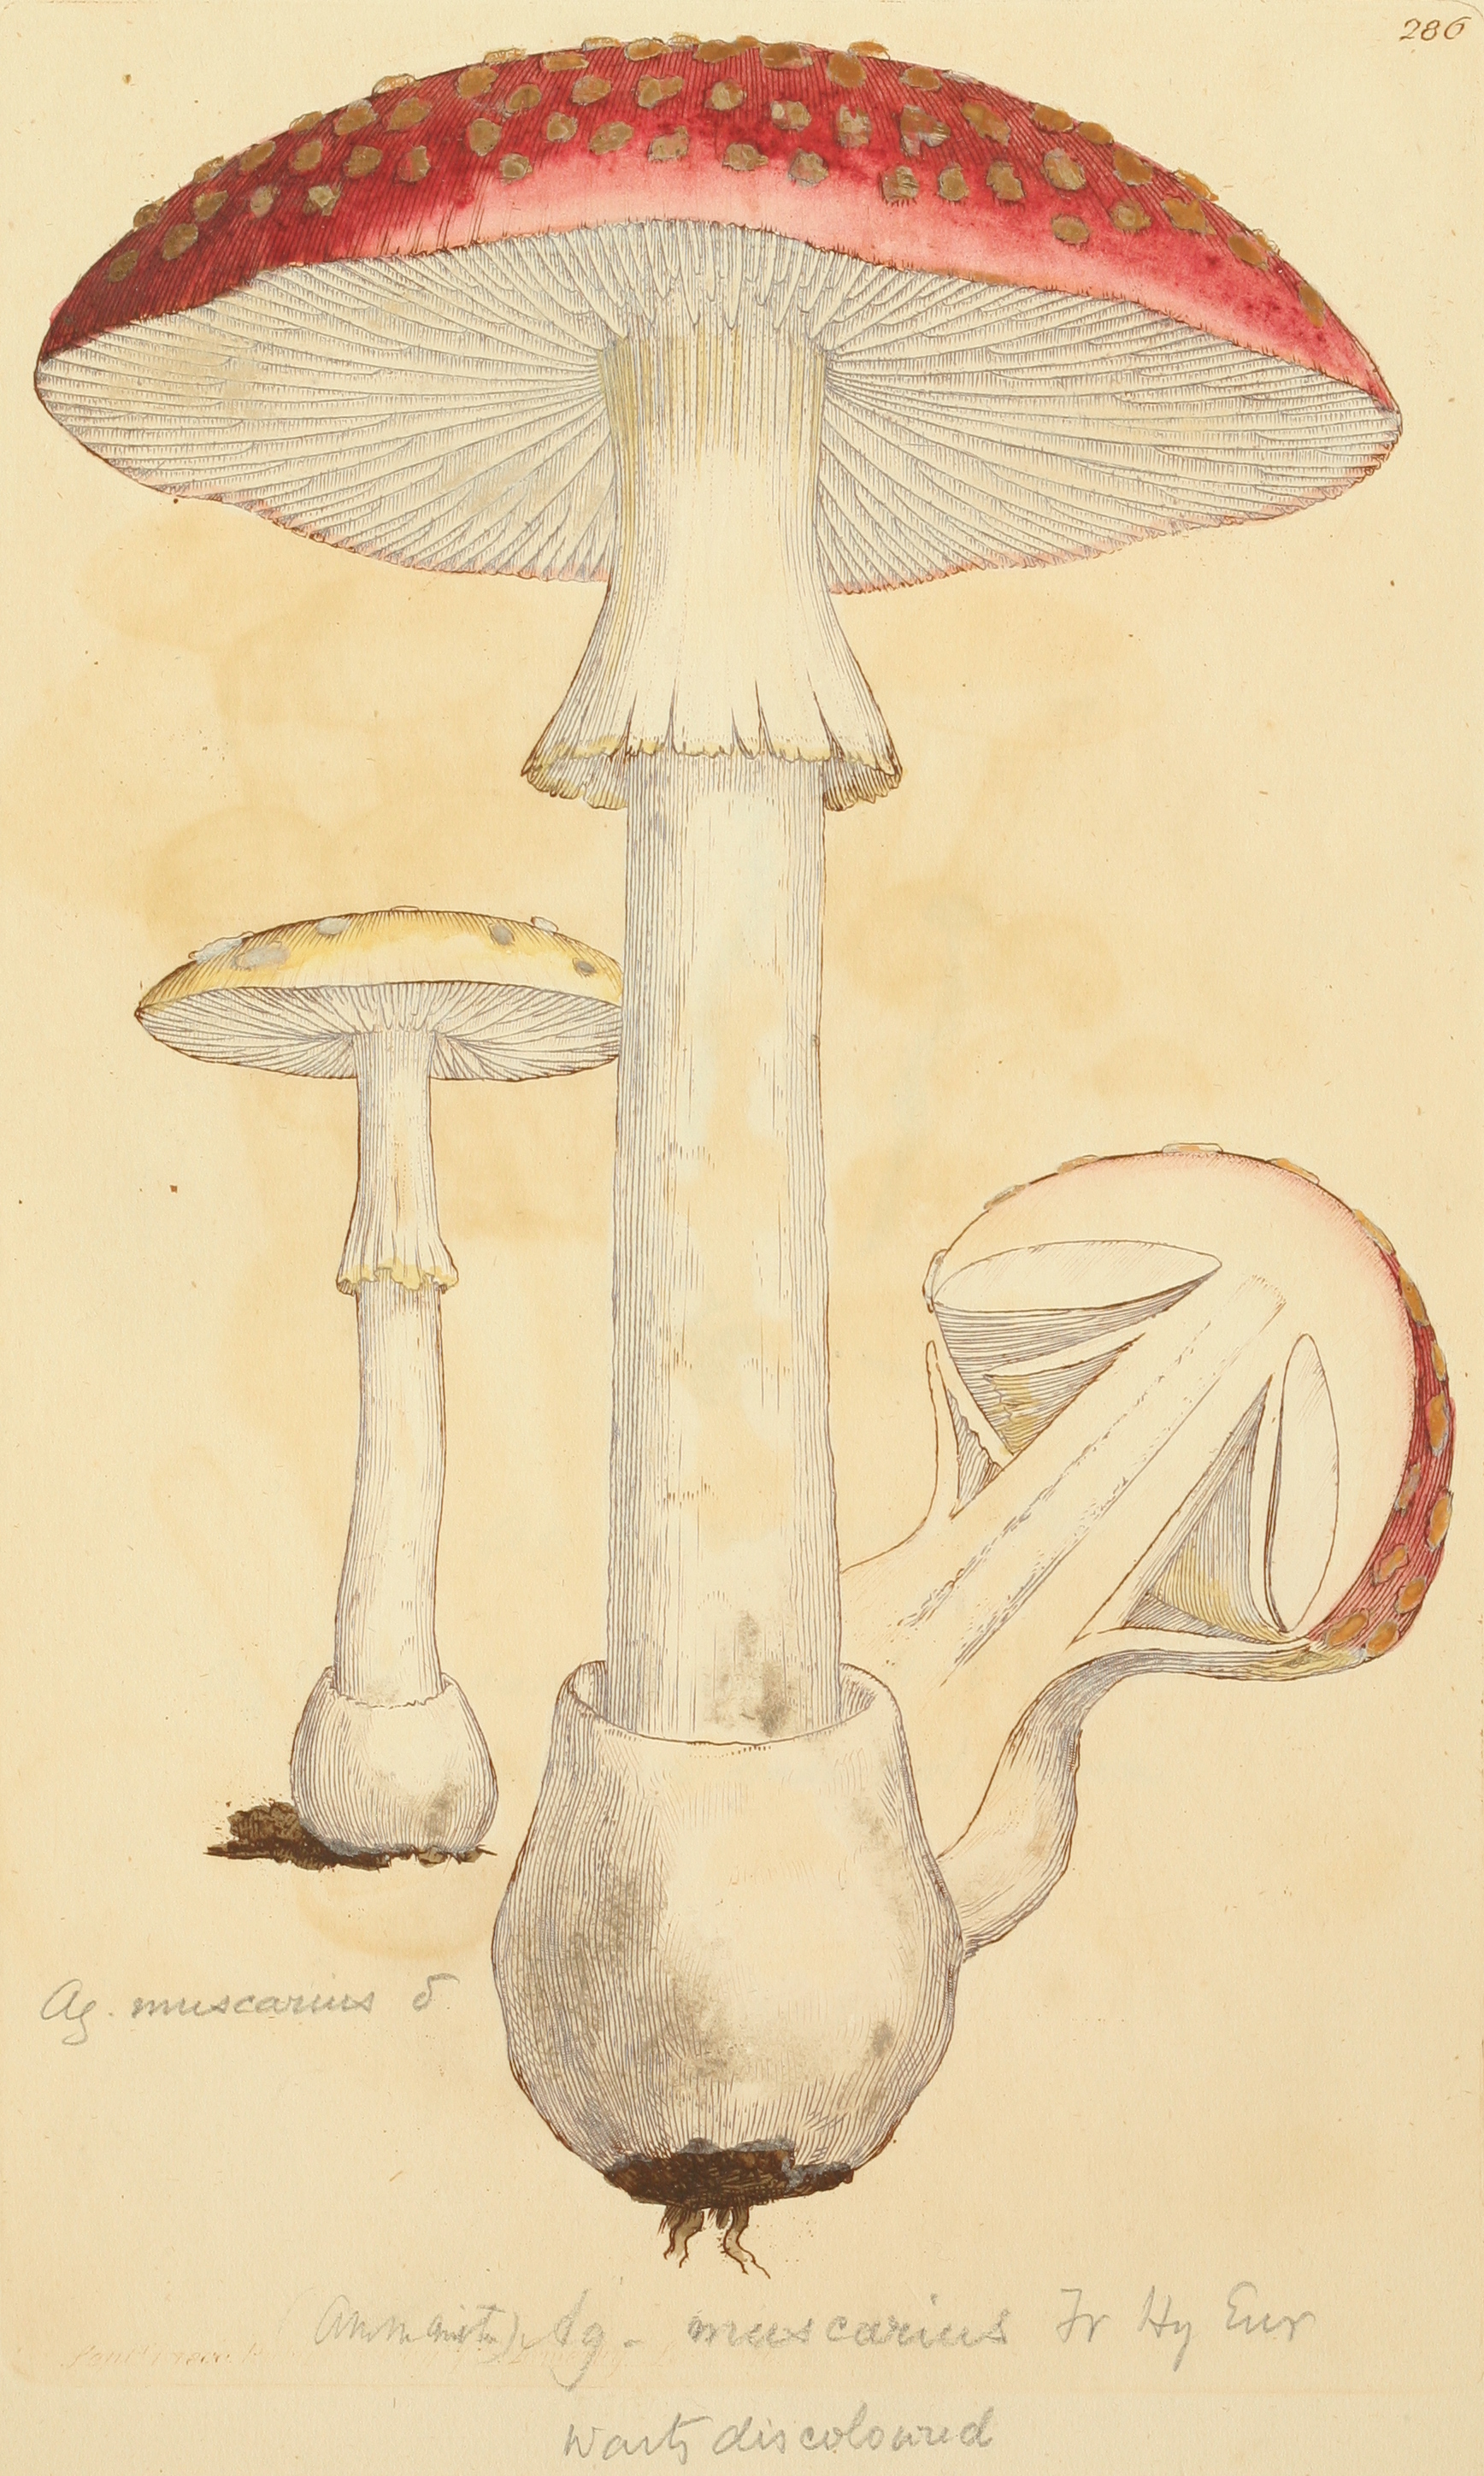 Coloured Figures of English Fungi or Mushrooms - t. 286